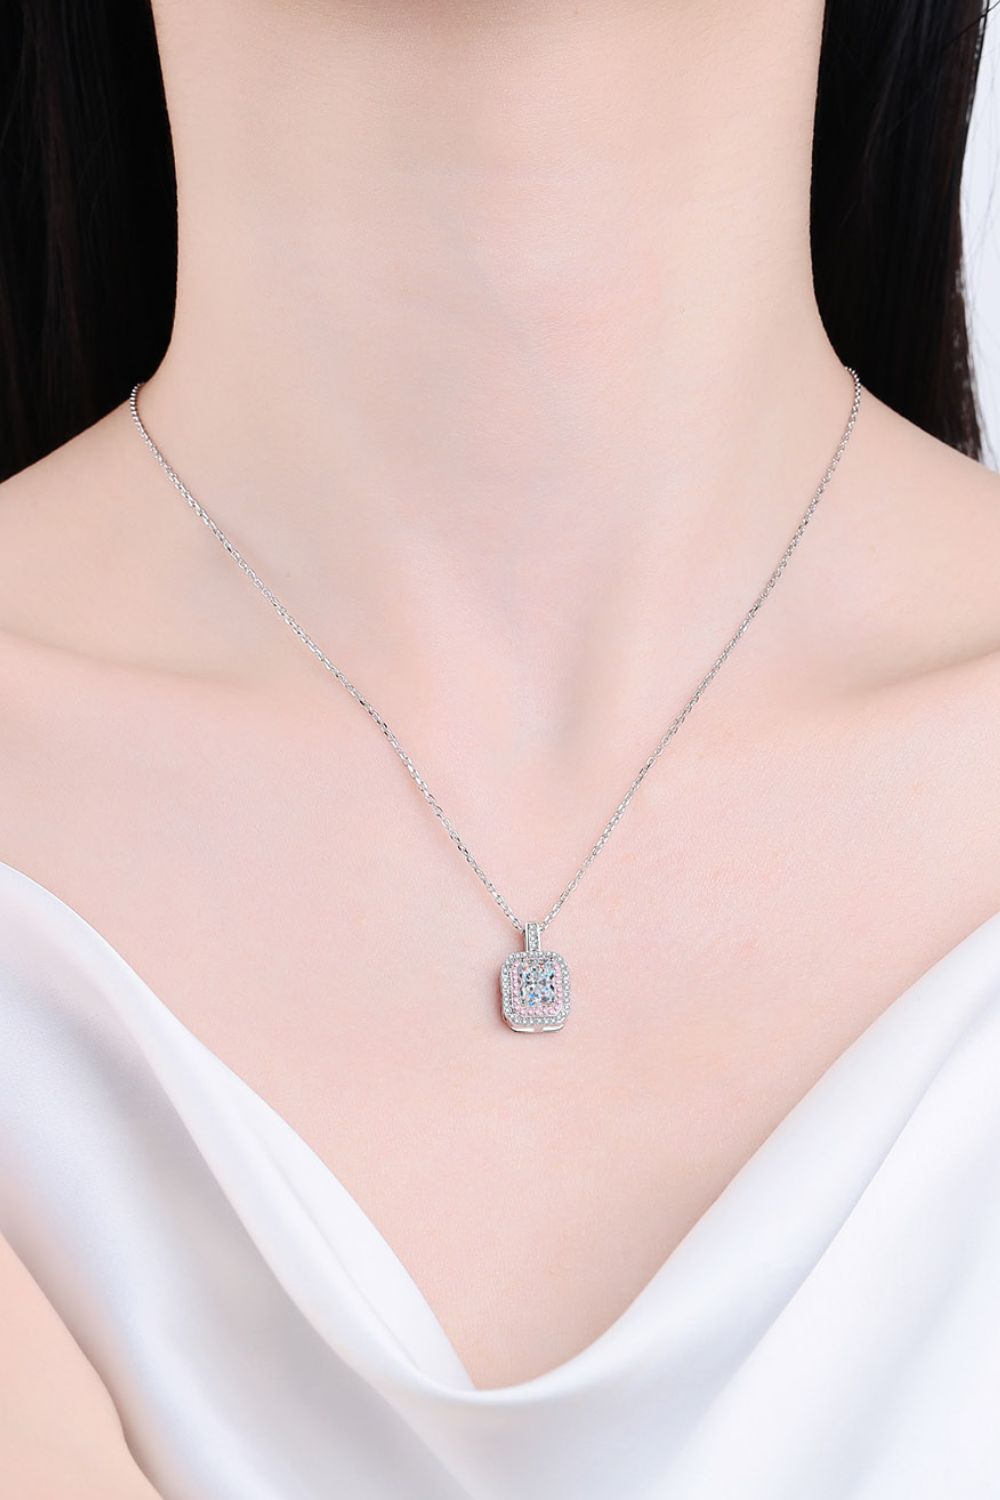 1 Carat Moissanite Geometric Pendant Chain Necklace - Shop women apparel, Jewelry, bath & beauty products online - Arwen's Boutique